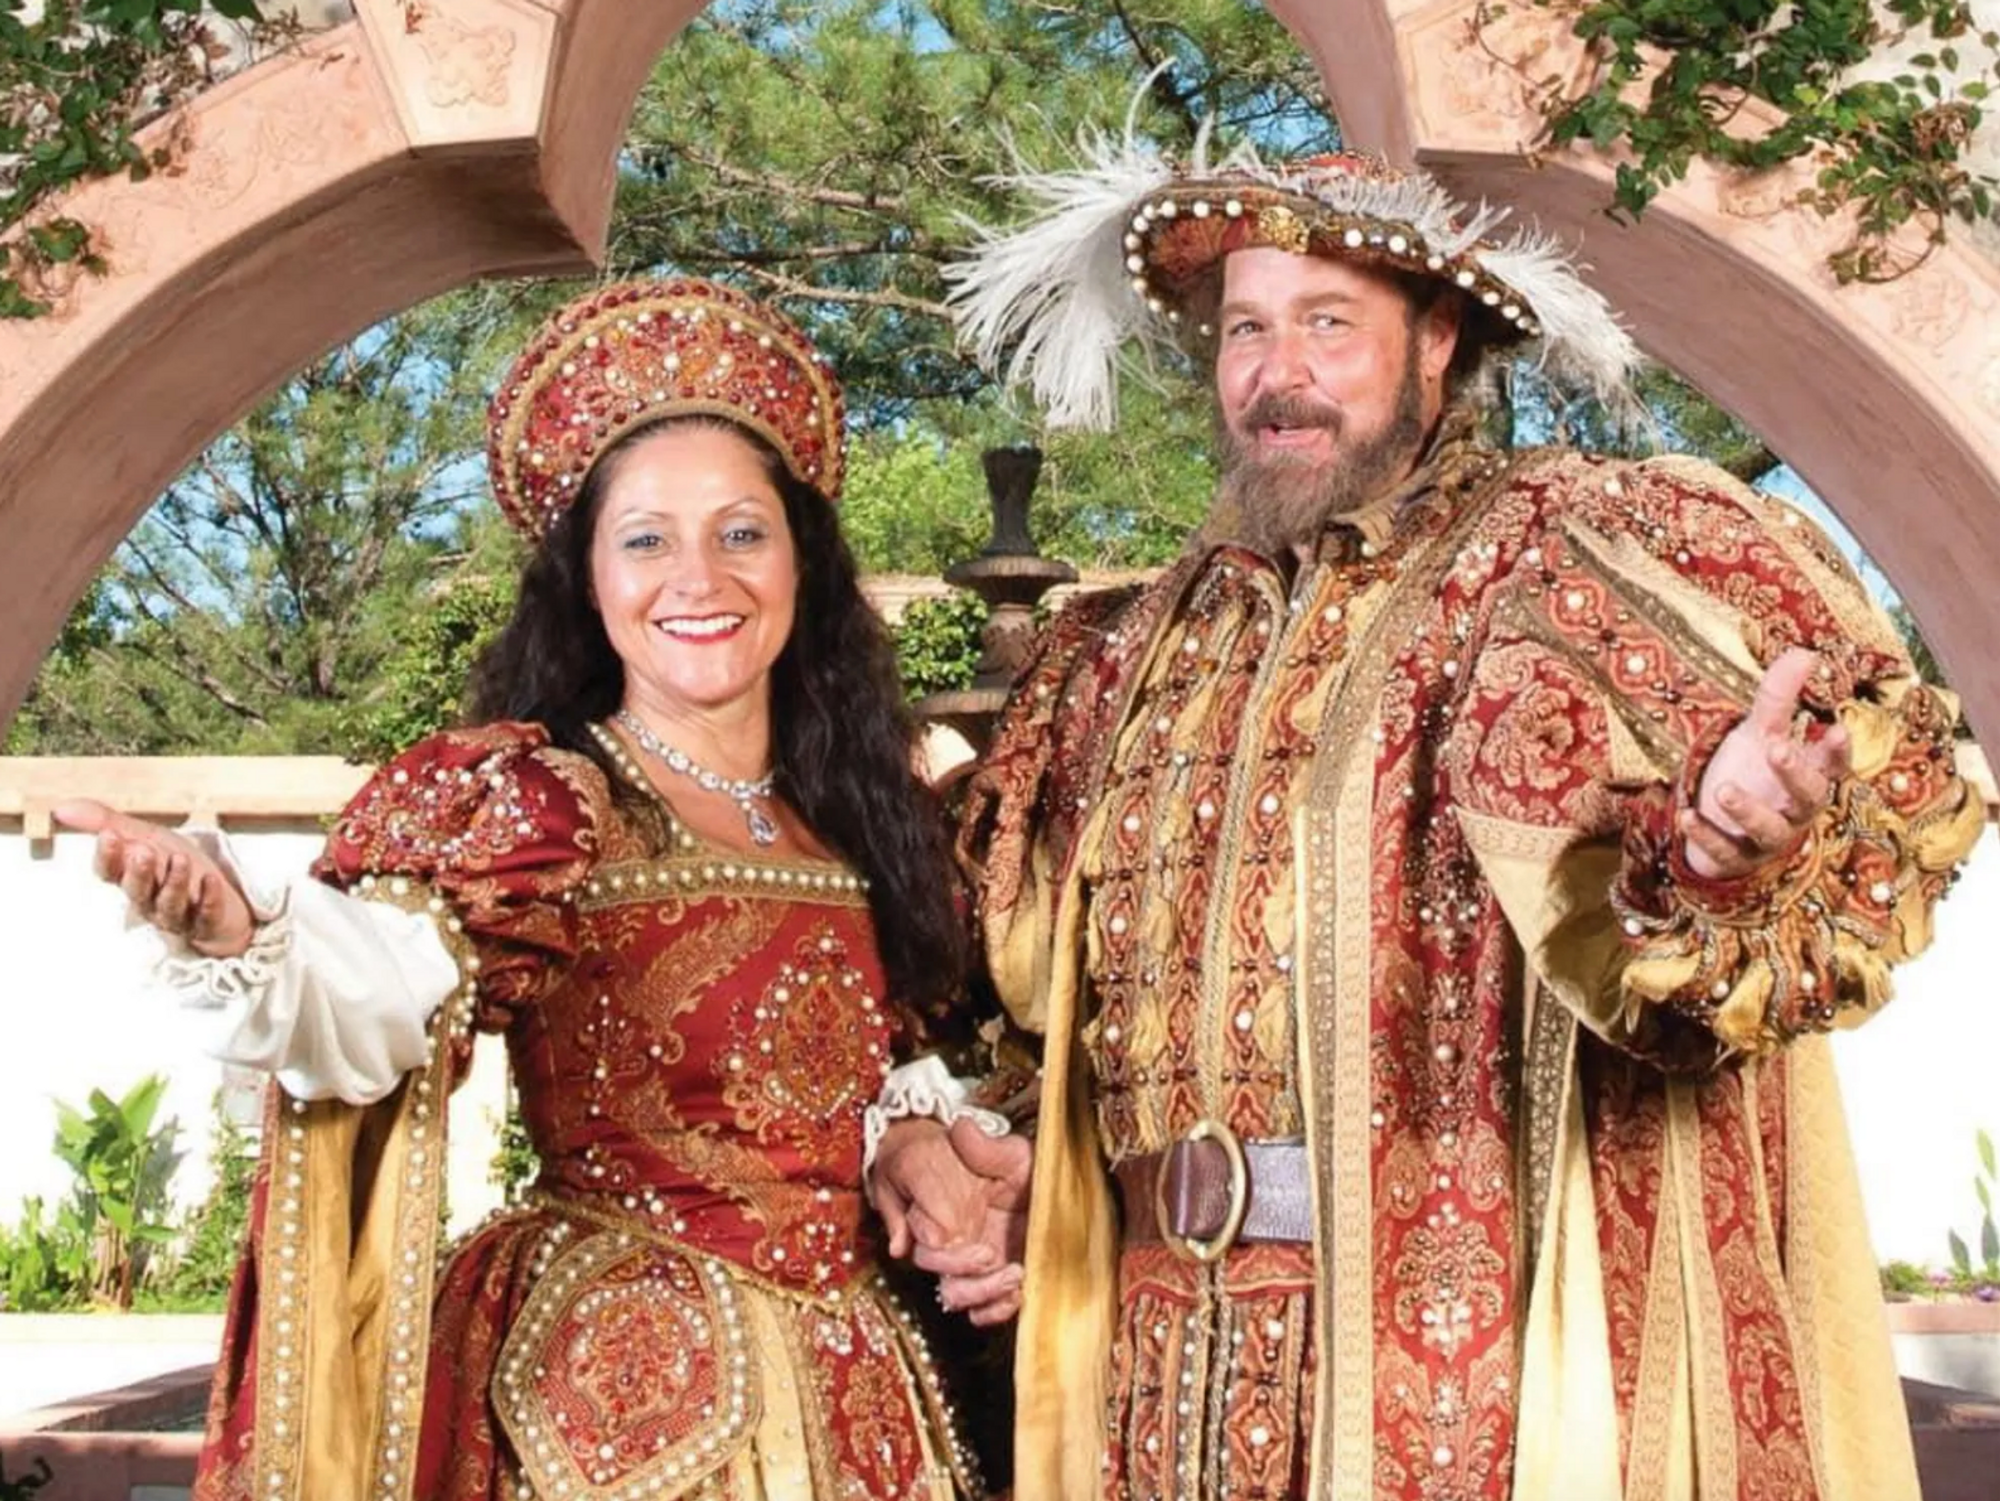 Texas Renaissance Festival queen and king